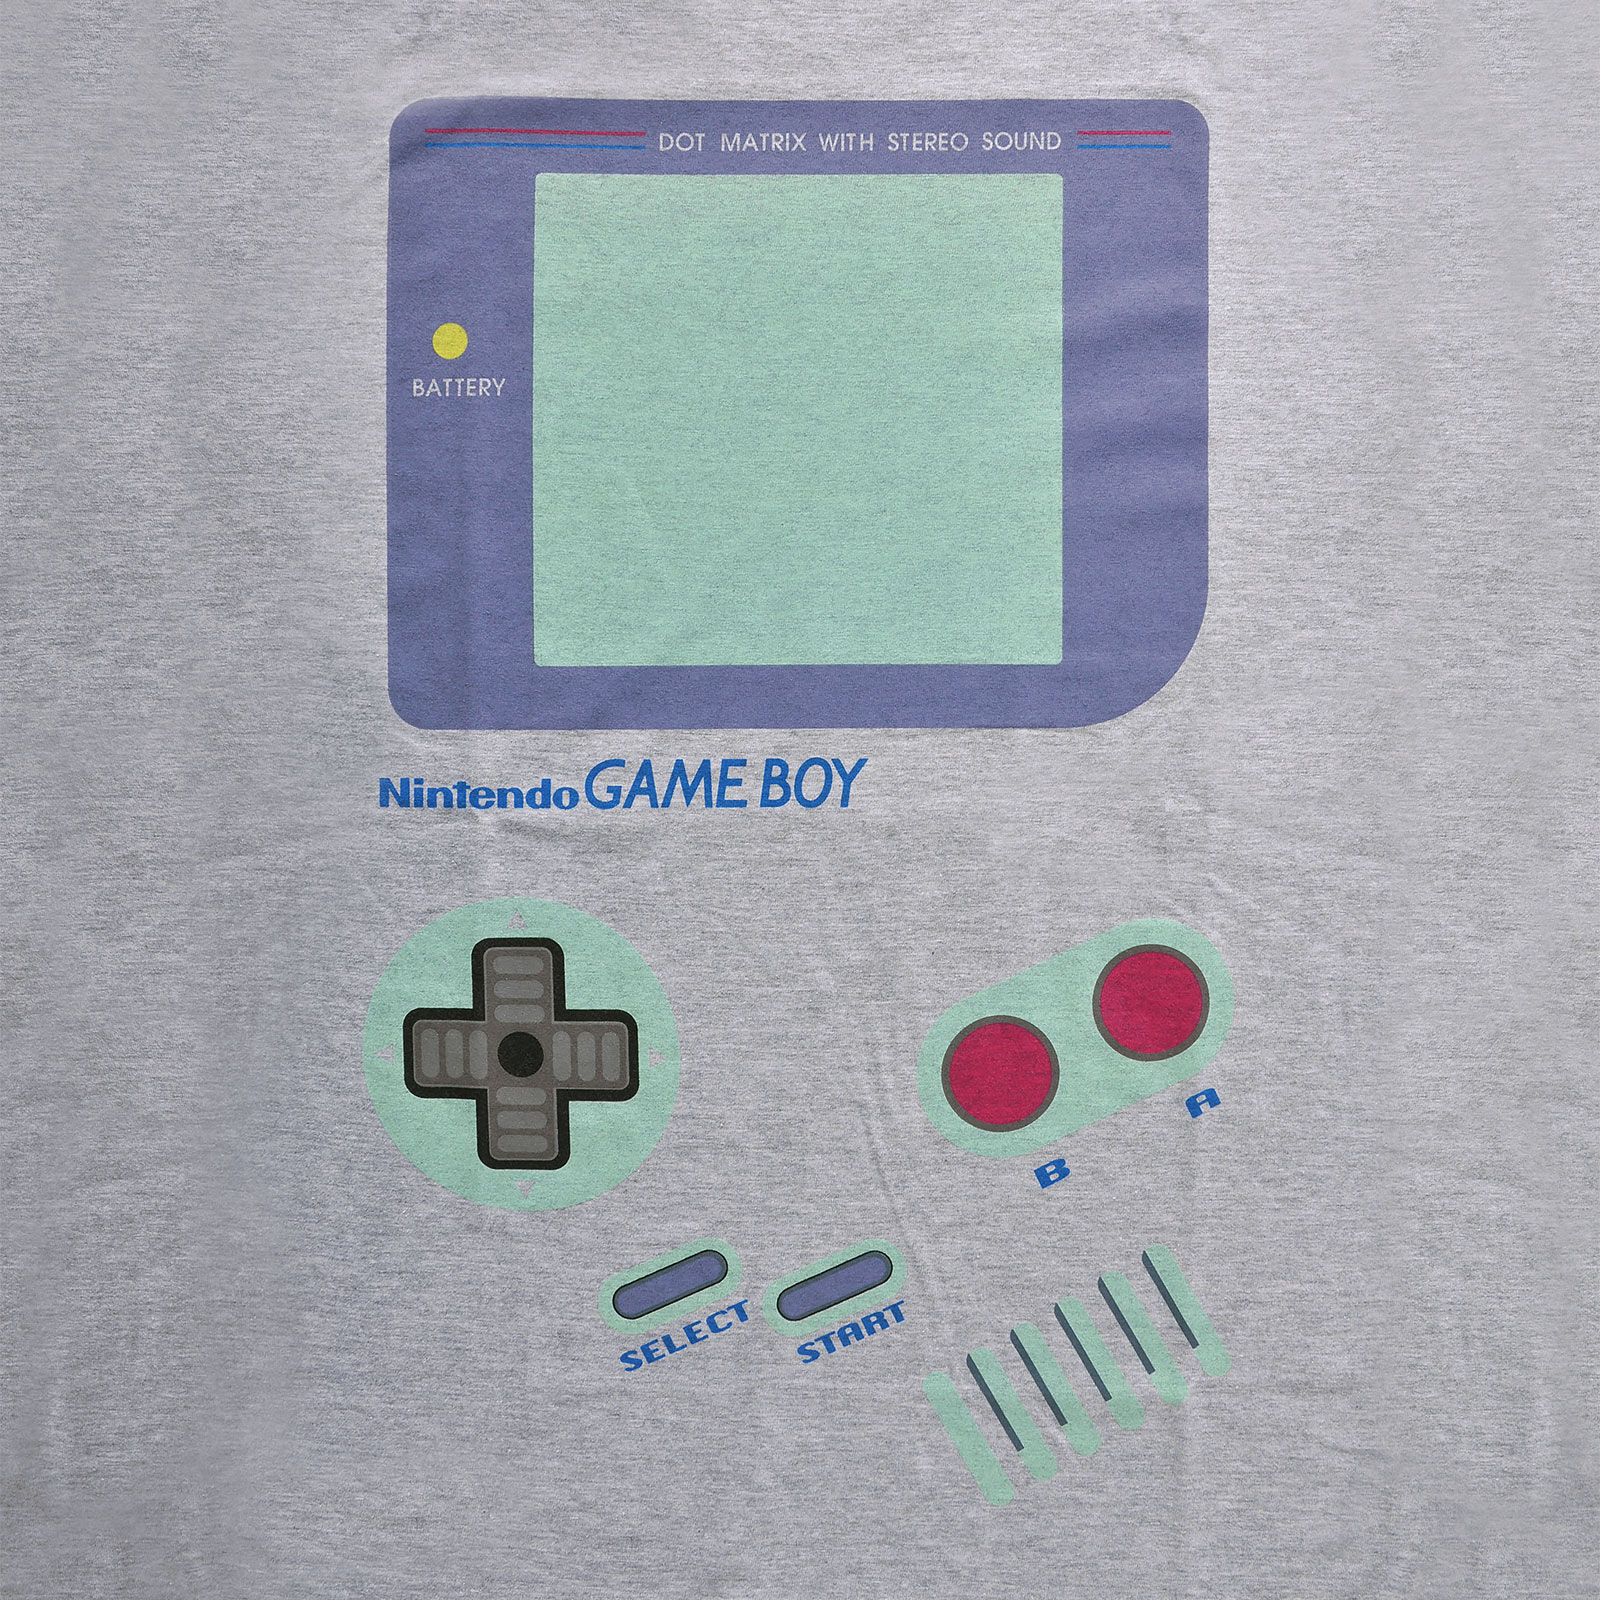 Nintendo - Game Boy T-Shirt grau